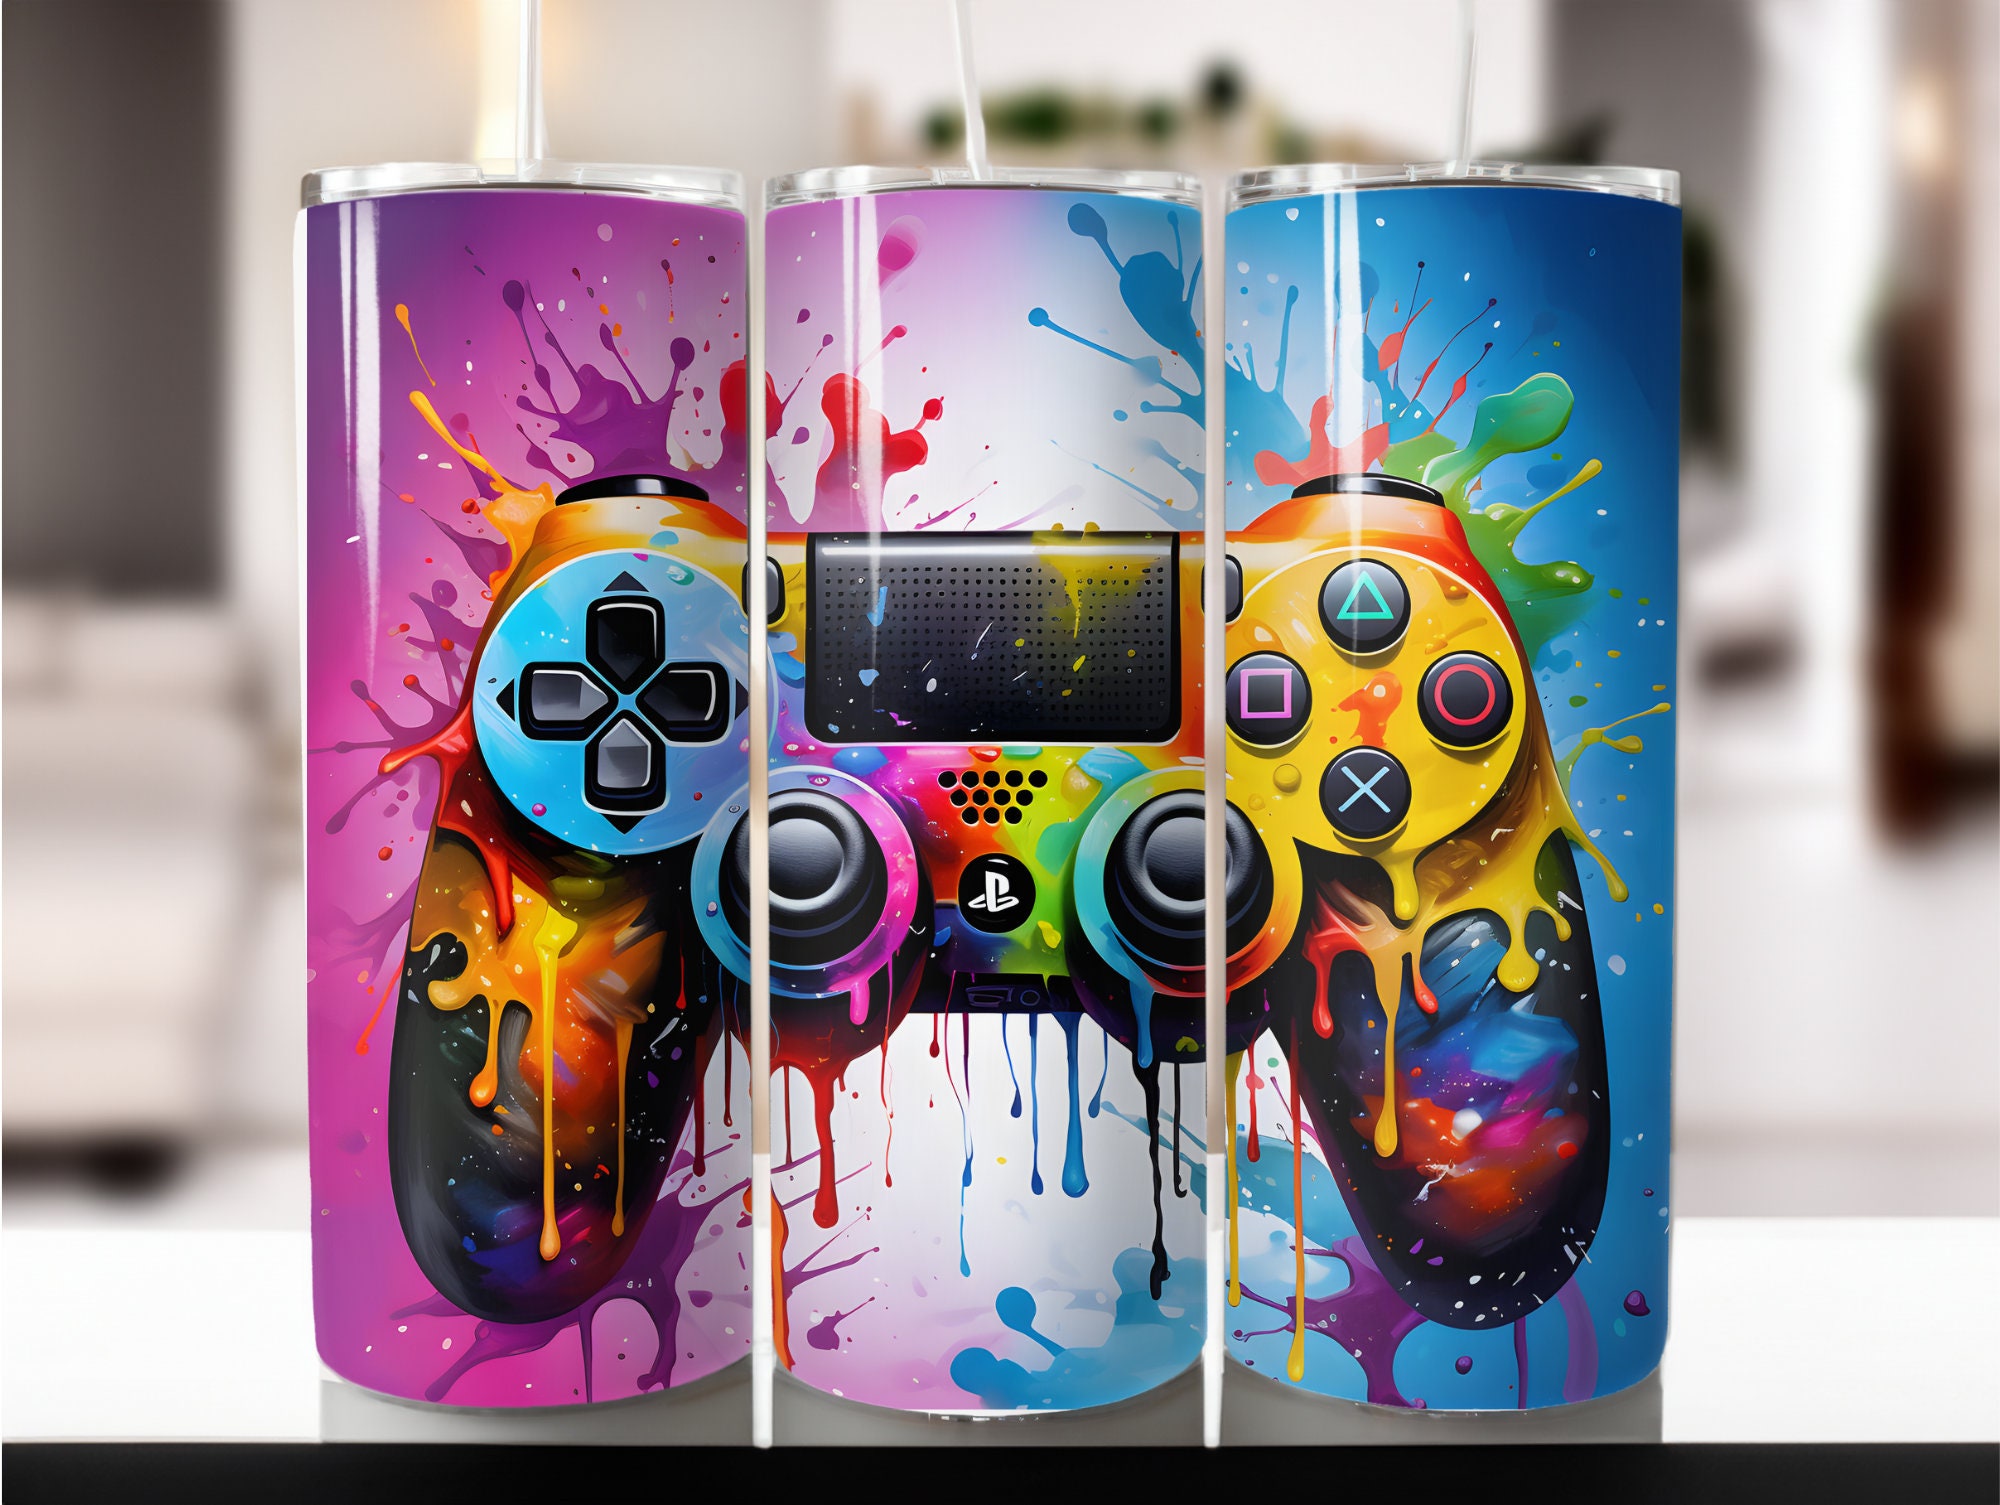 Mando PS4 Personalizado - Graffiti PRO MANDOS PS4 PERSONALIZADOS Co